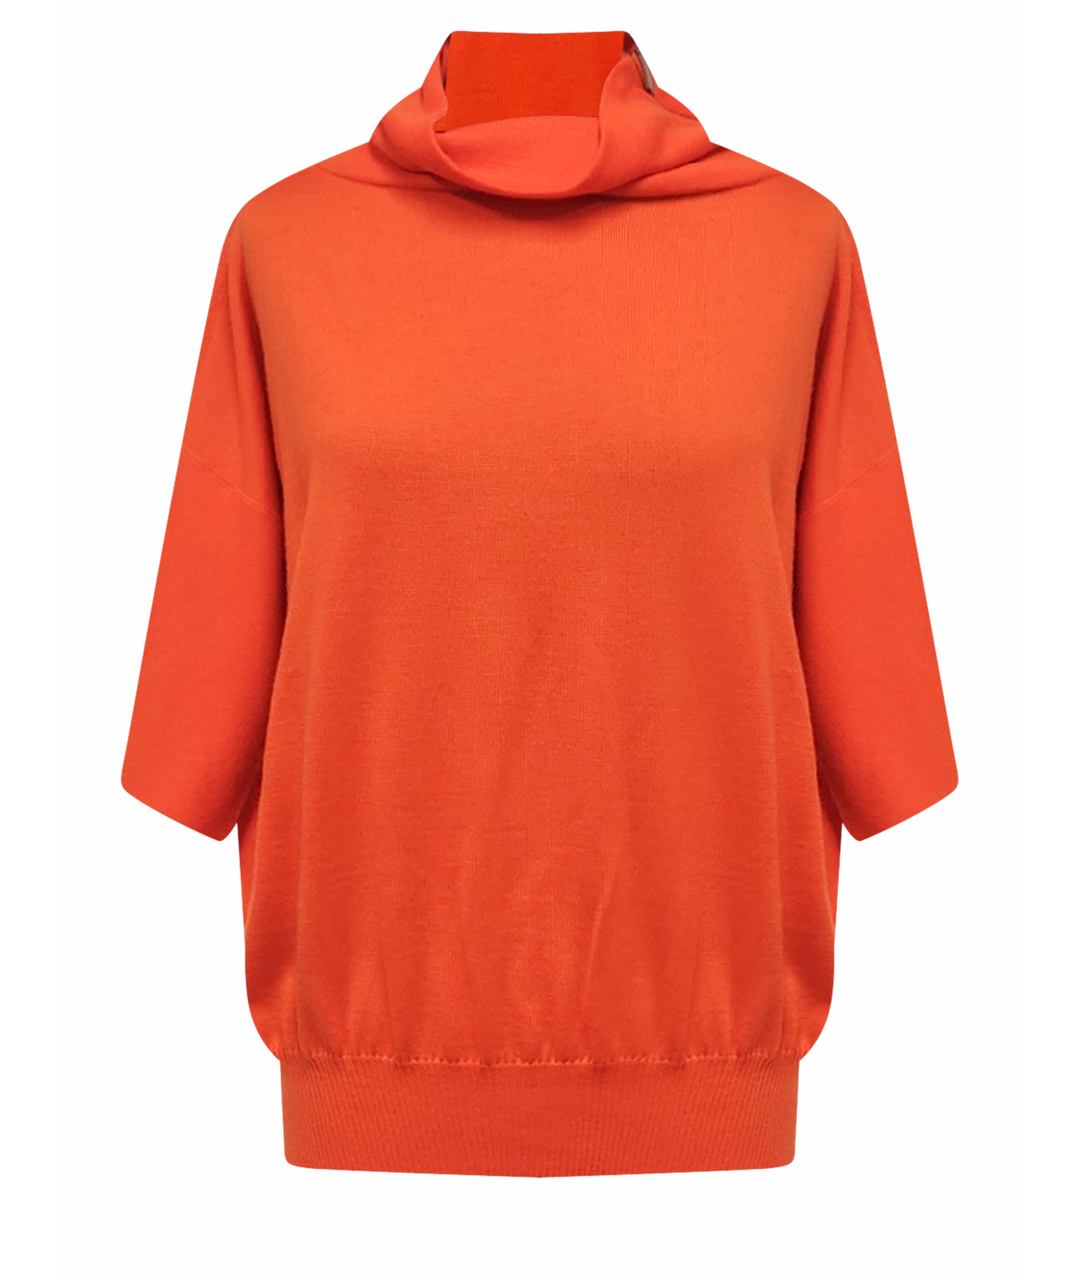 HERMES PRE-OWNED Оранжевый кашемировый джемпер / свитер, фото 1